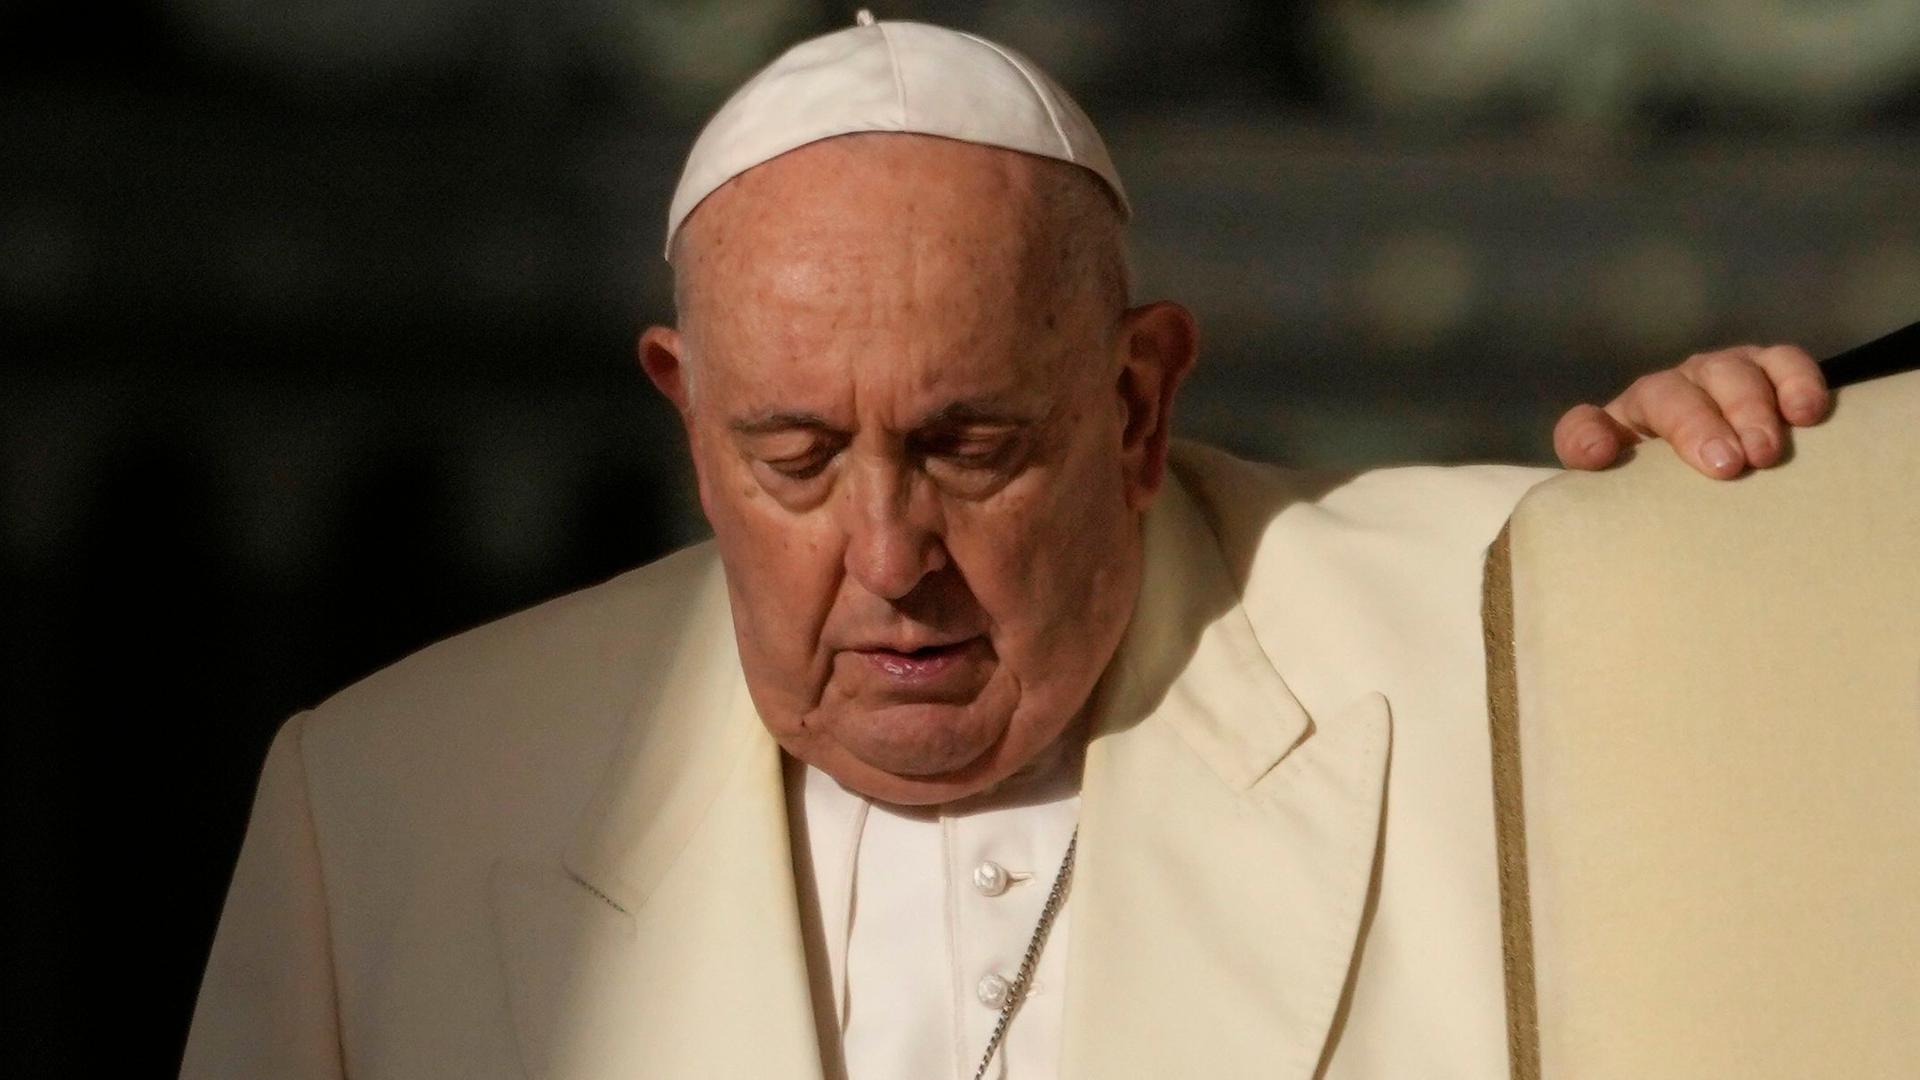 Weltklimakonferenz - Papst Franziskus sagt Reise nach Dubai ab